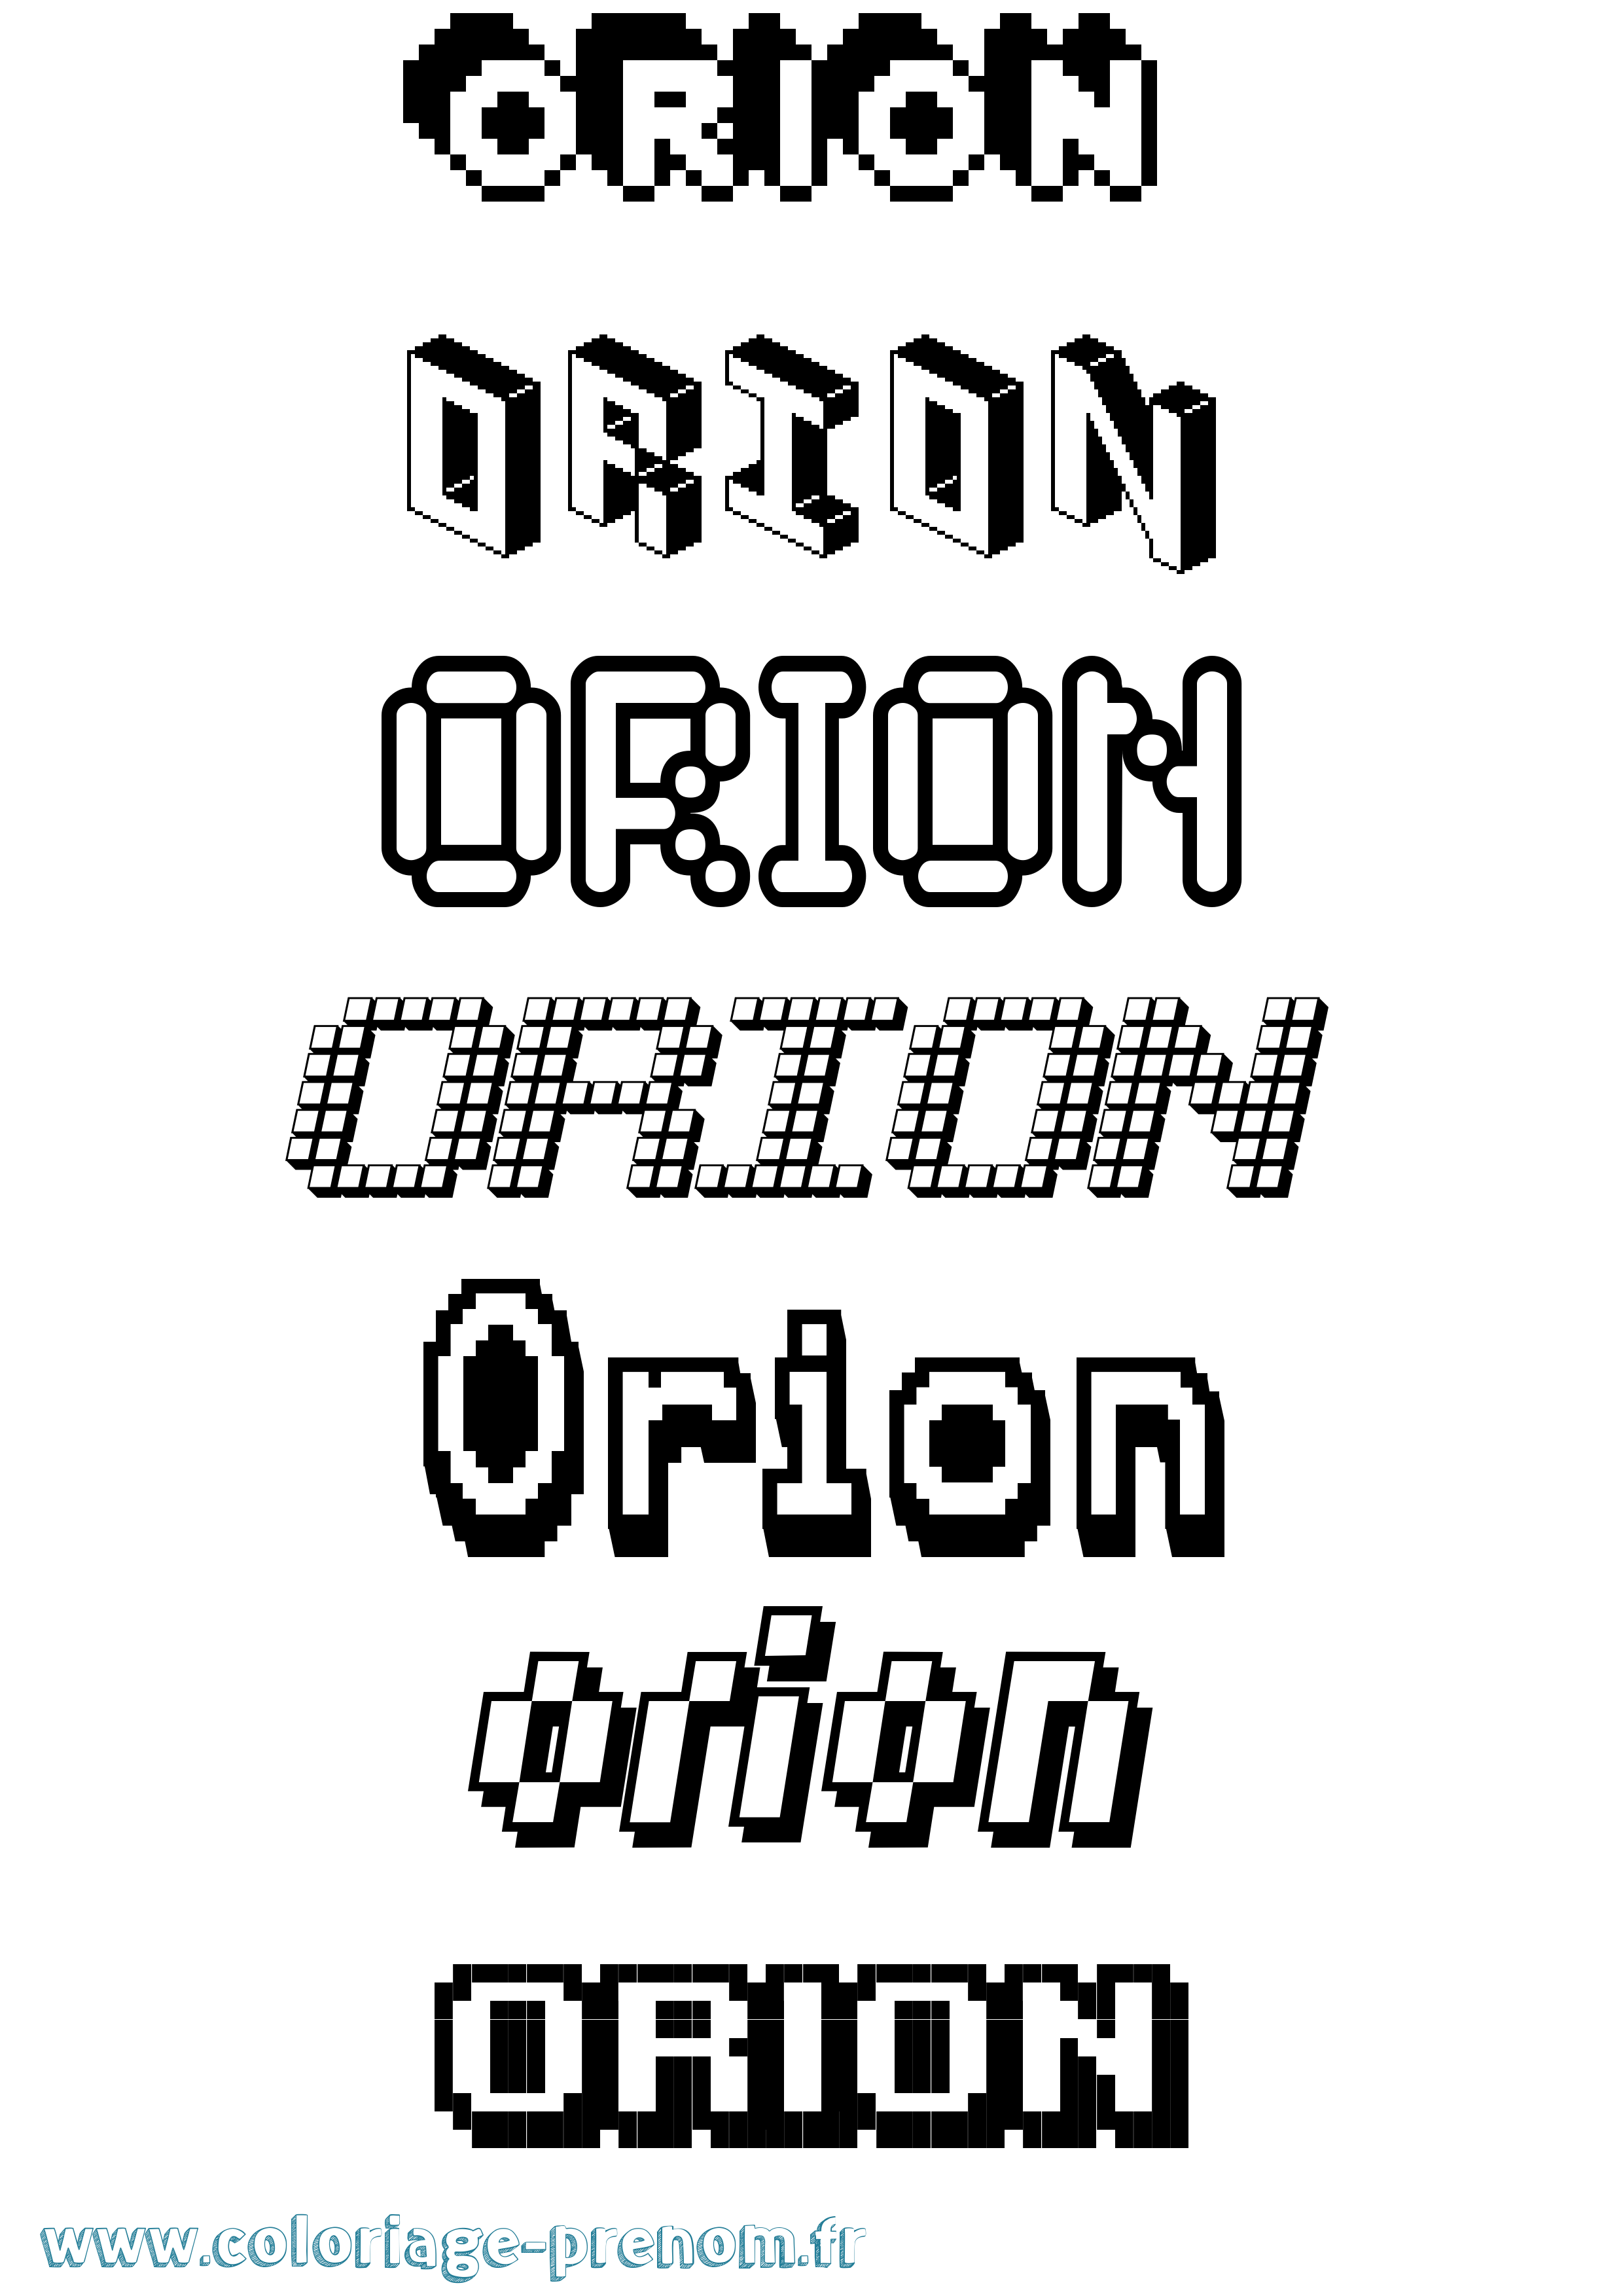 Coloriage prénom Orion Pixel